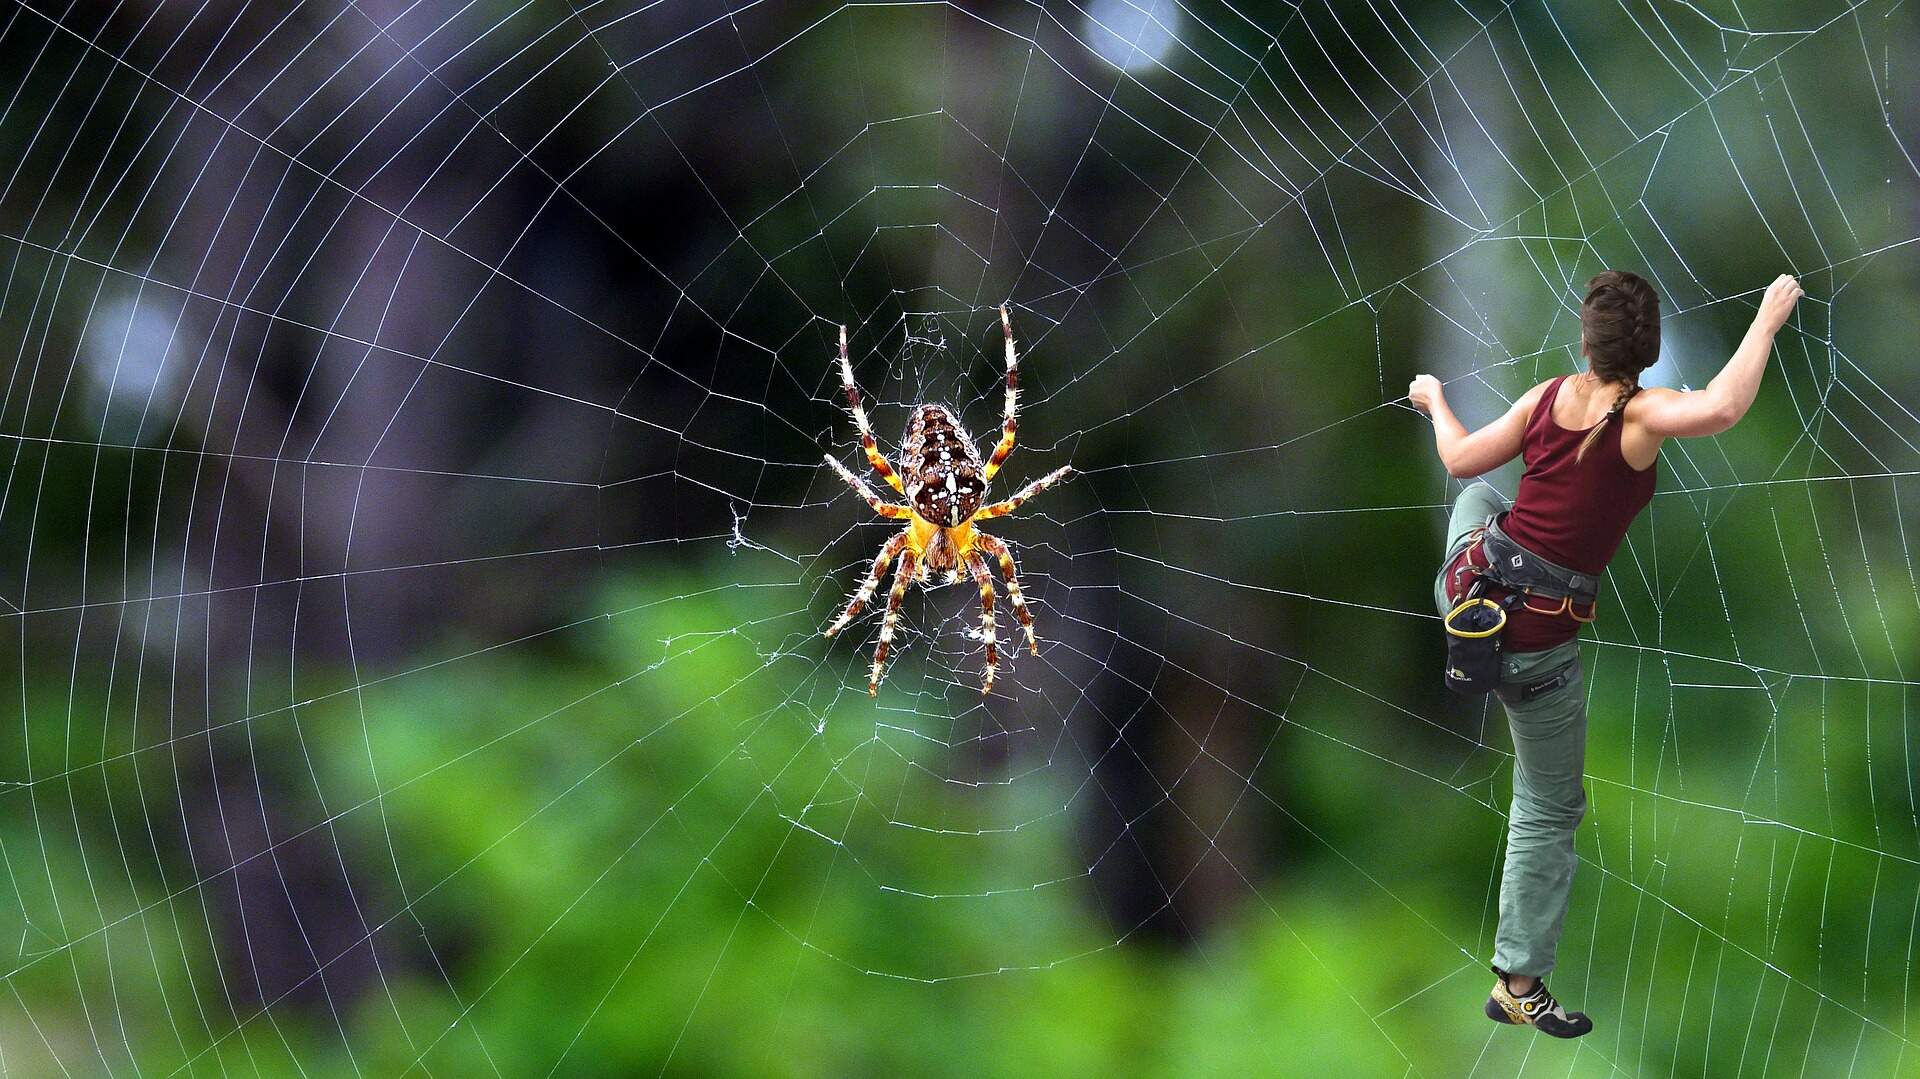 spider-web-climbing-wallpaper